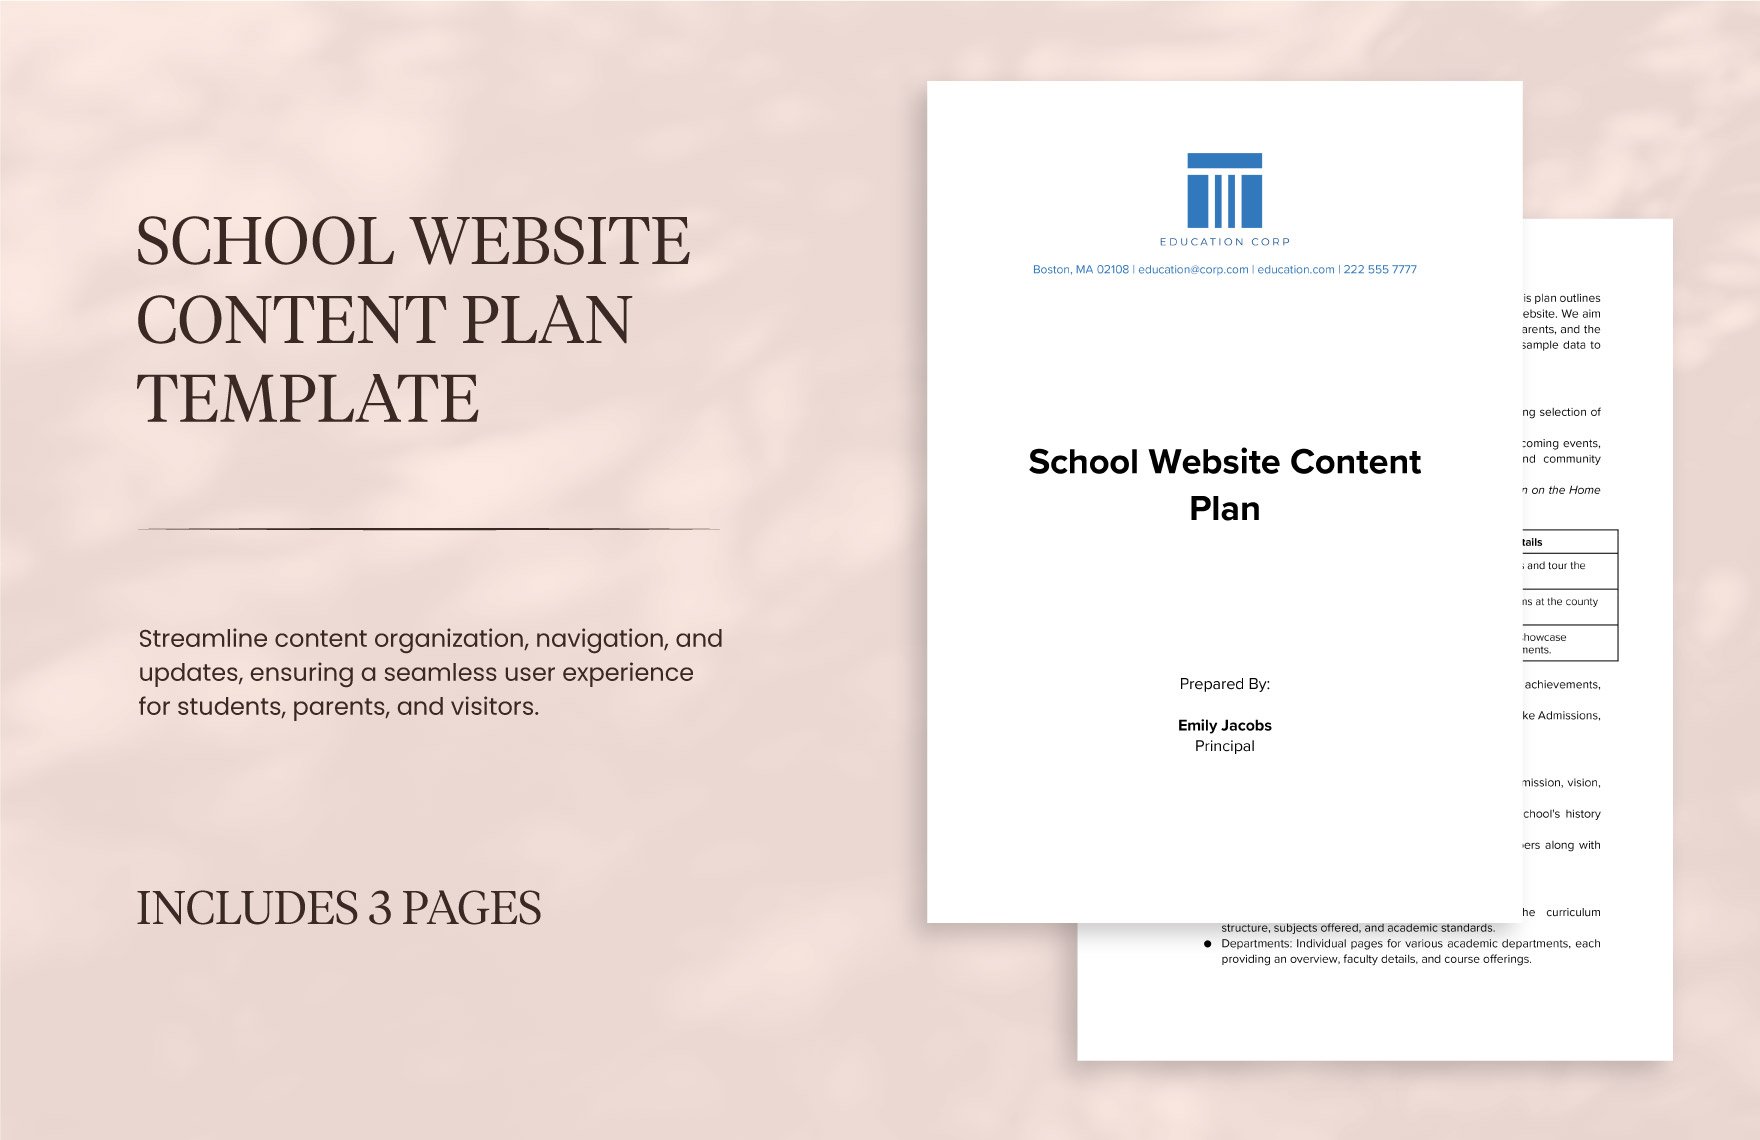 School Website Content Plan Template in Word, Google Docs, PDF